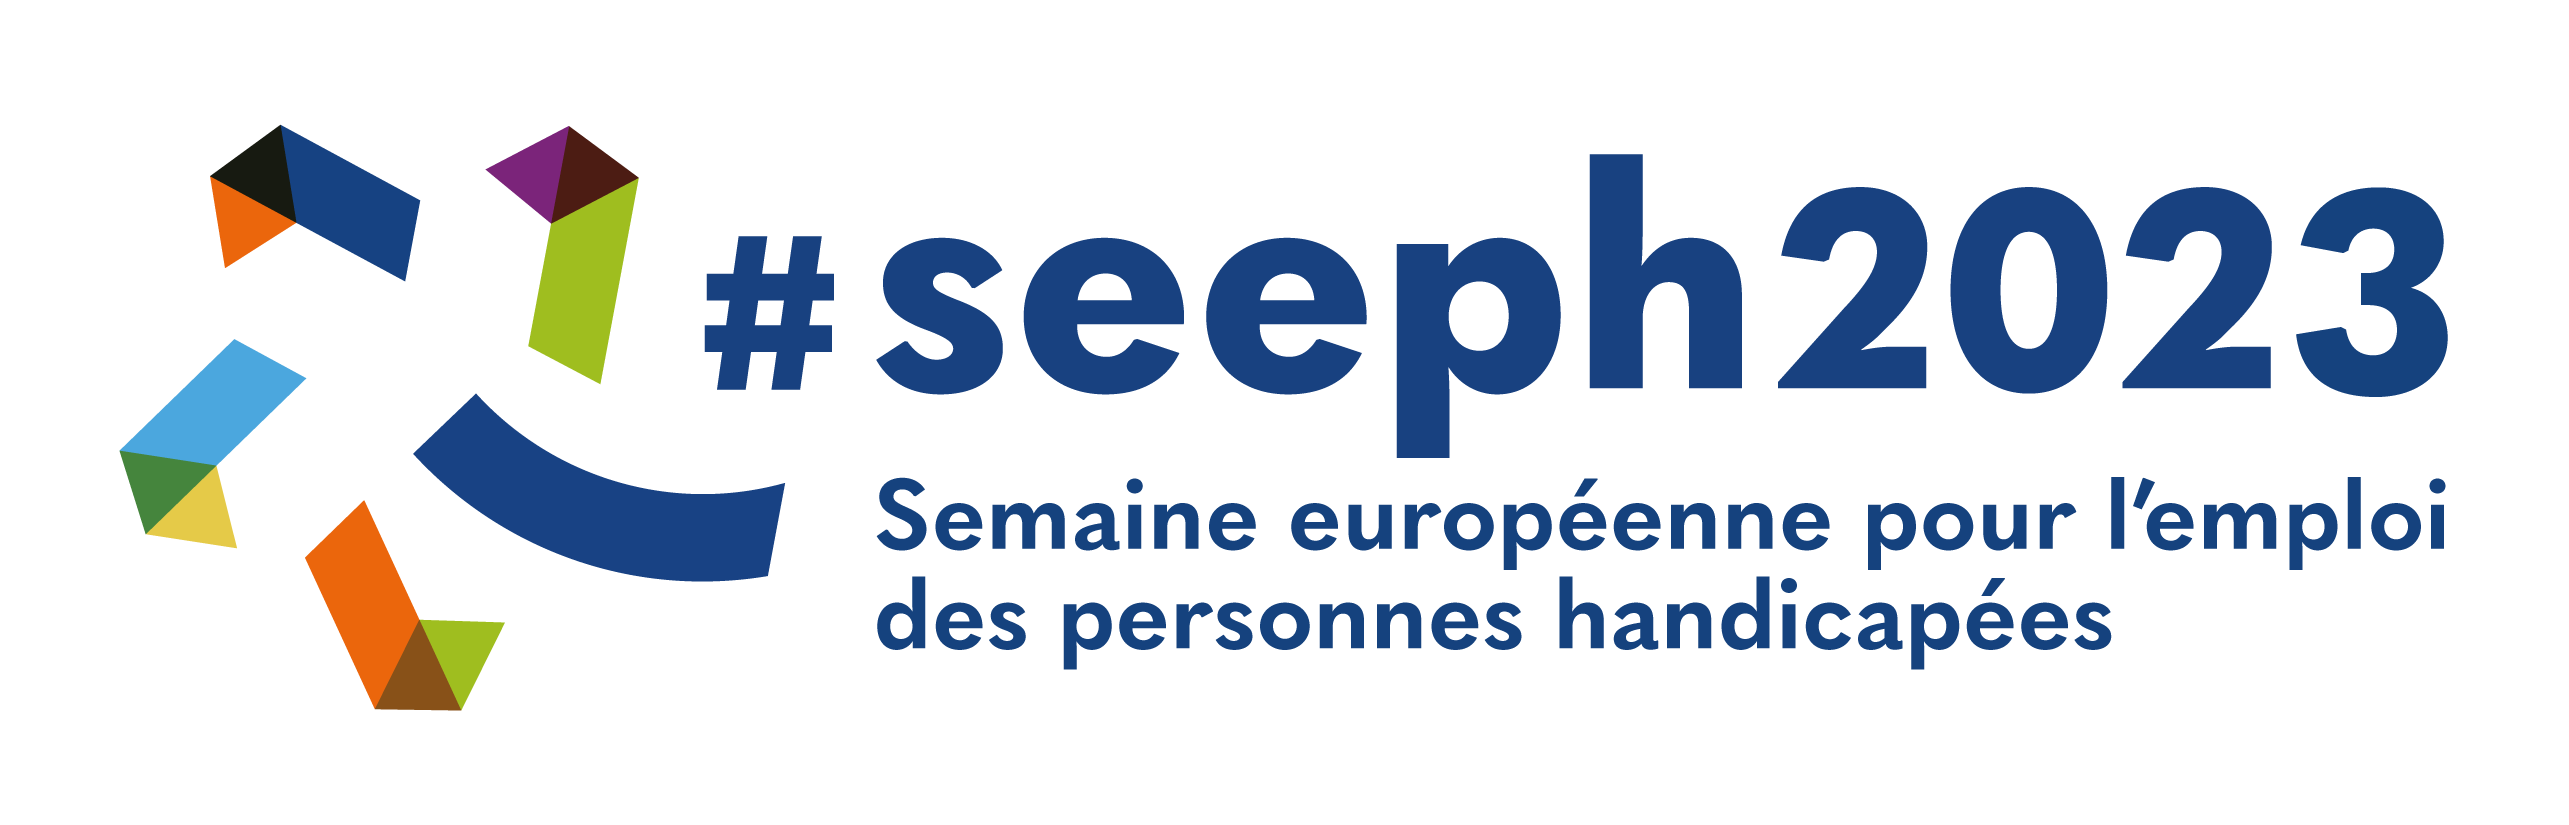 Du 20 au 26 novembre la Semaine européenne pour l’emploi des personnes handicapées (SEEPH) revient pour une 27eme édition